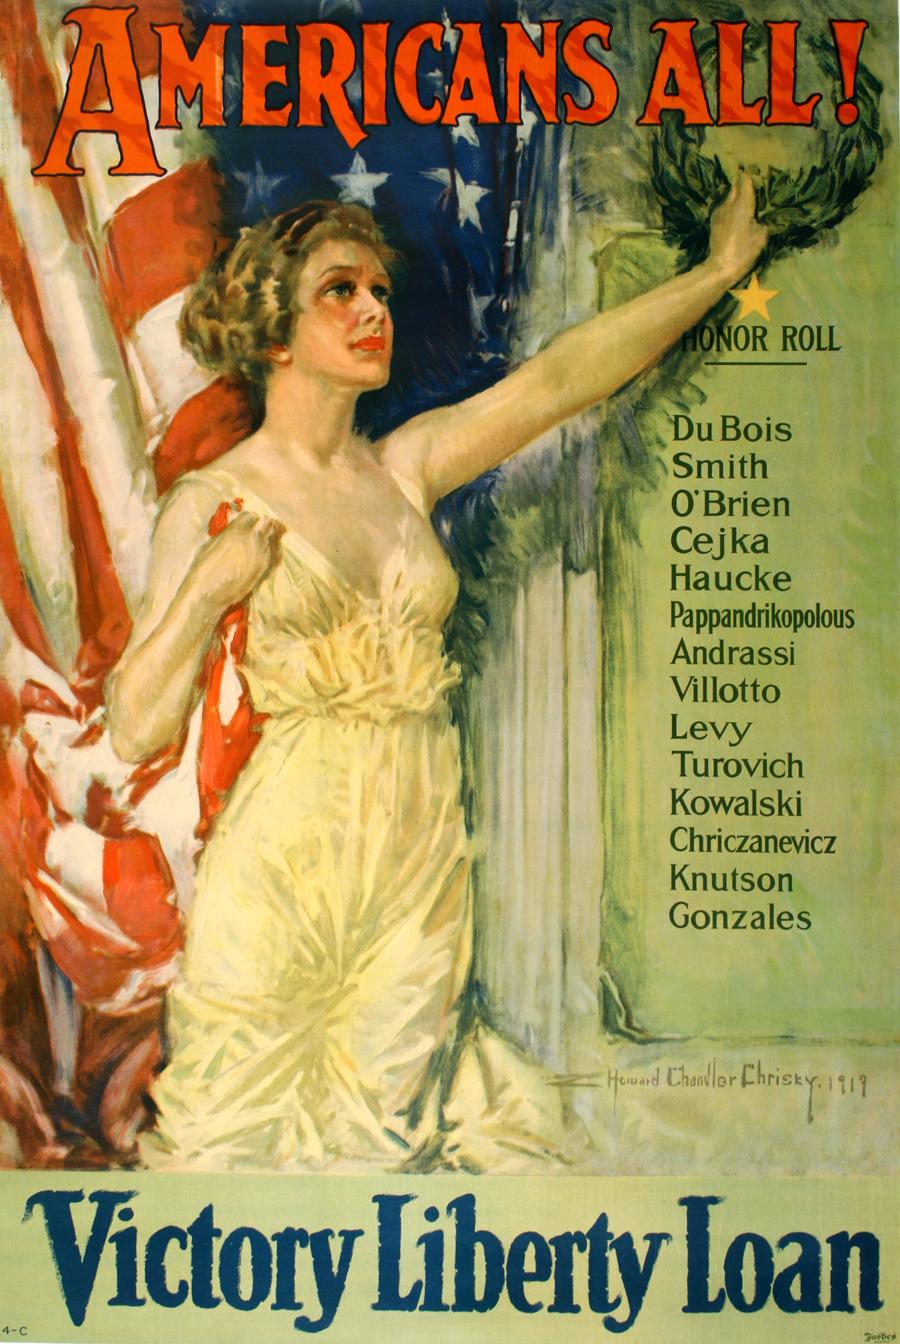 Alle Amerikaner! Victory Liberty Loan, Original-Vintage-Poster aus dem Ersten Weltkrieg von Christy 1919 – Print von Howard Chandler Christy